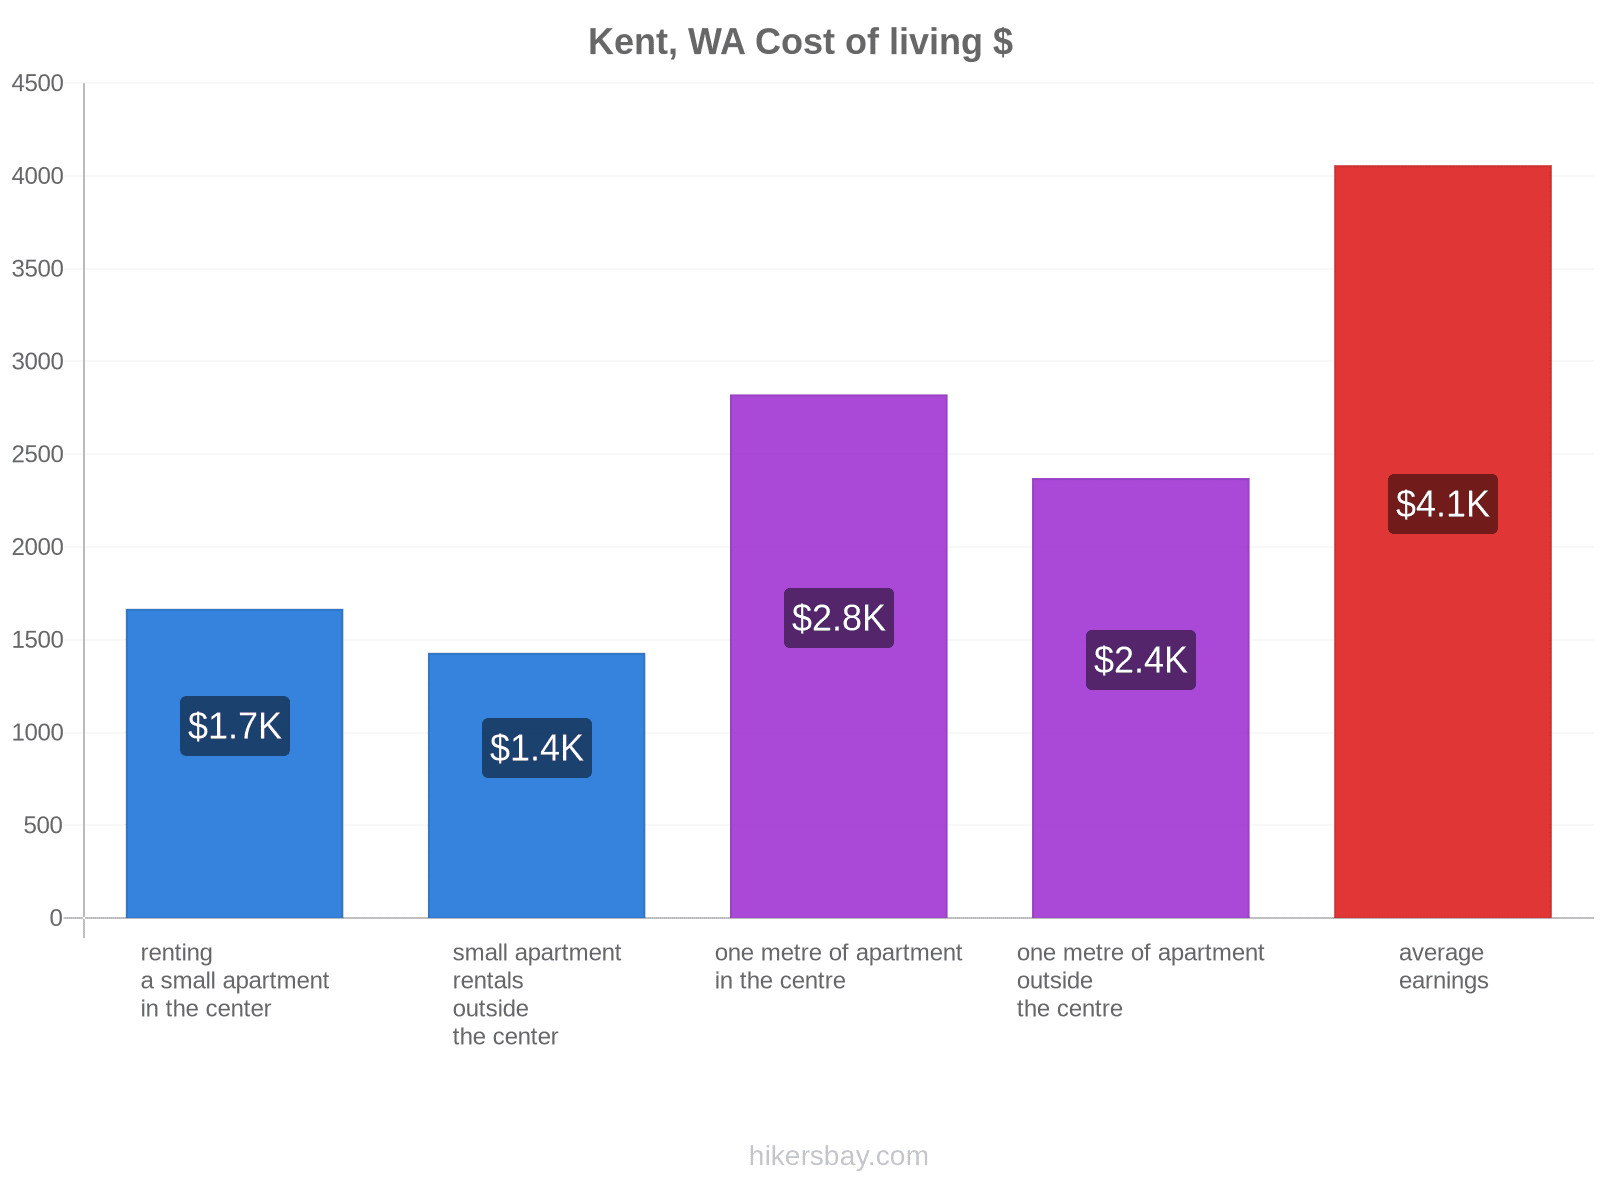 Kent, WA cost of living hikersbay.com